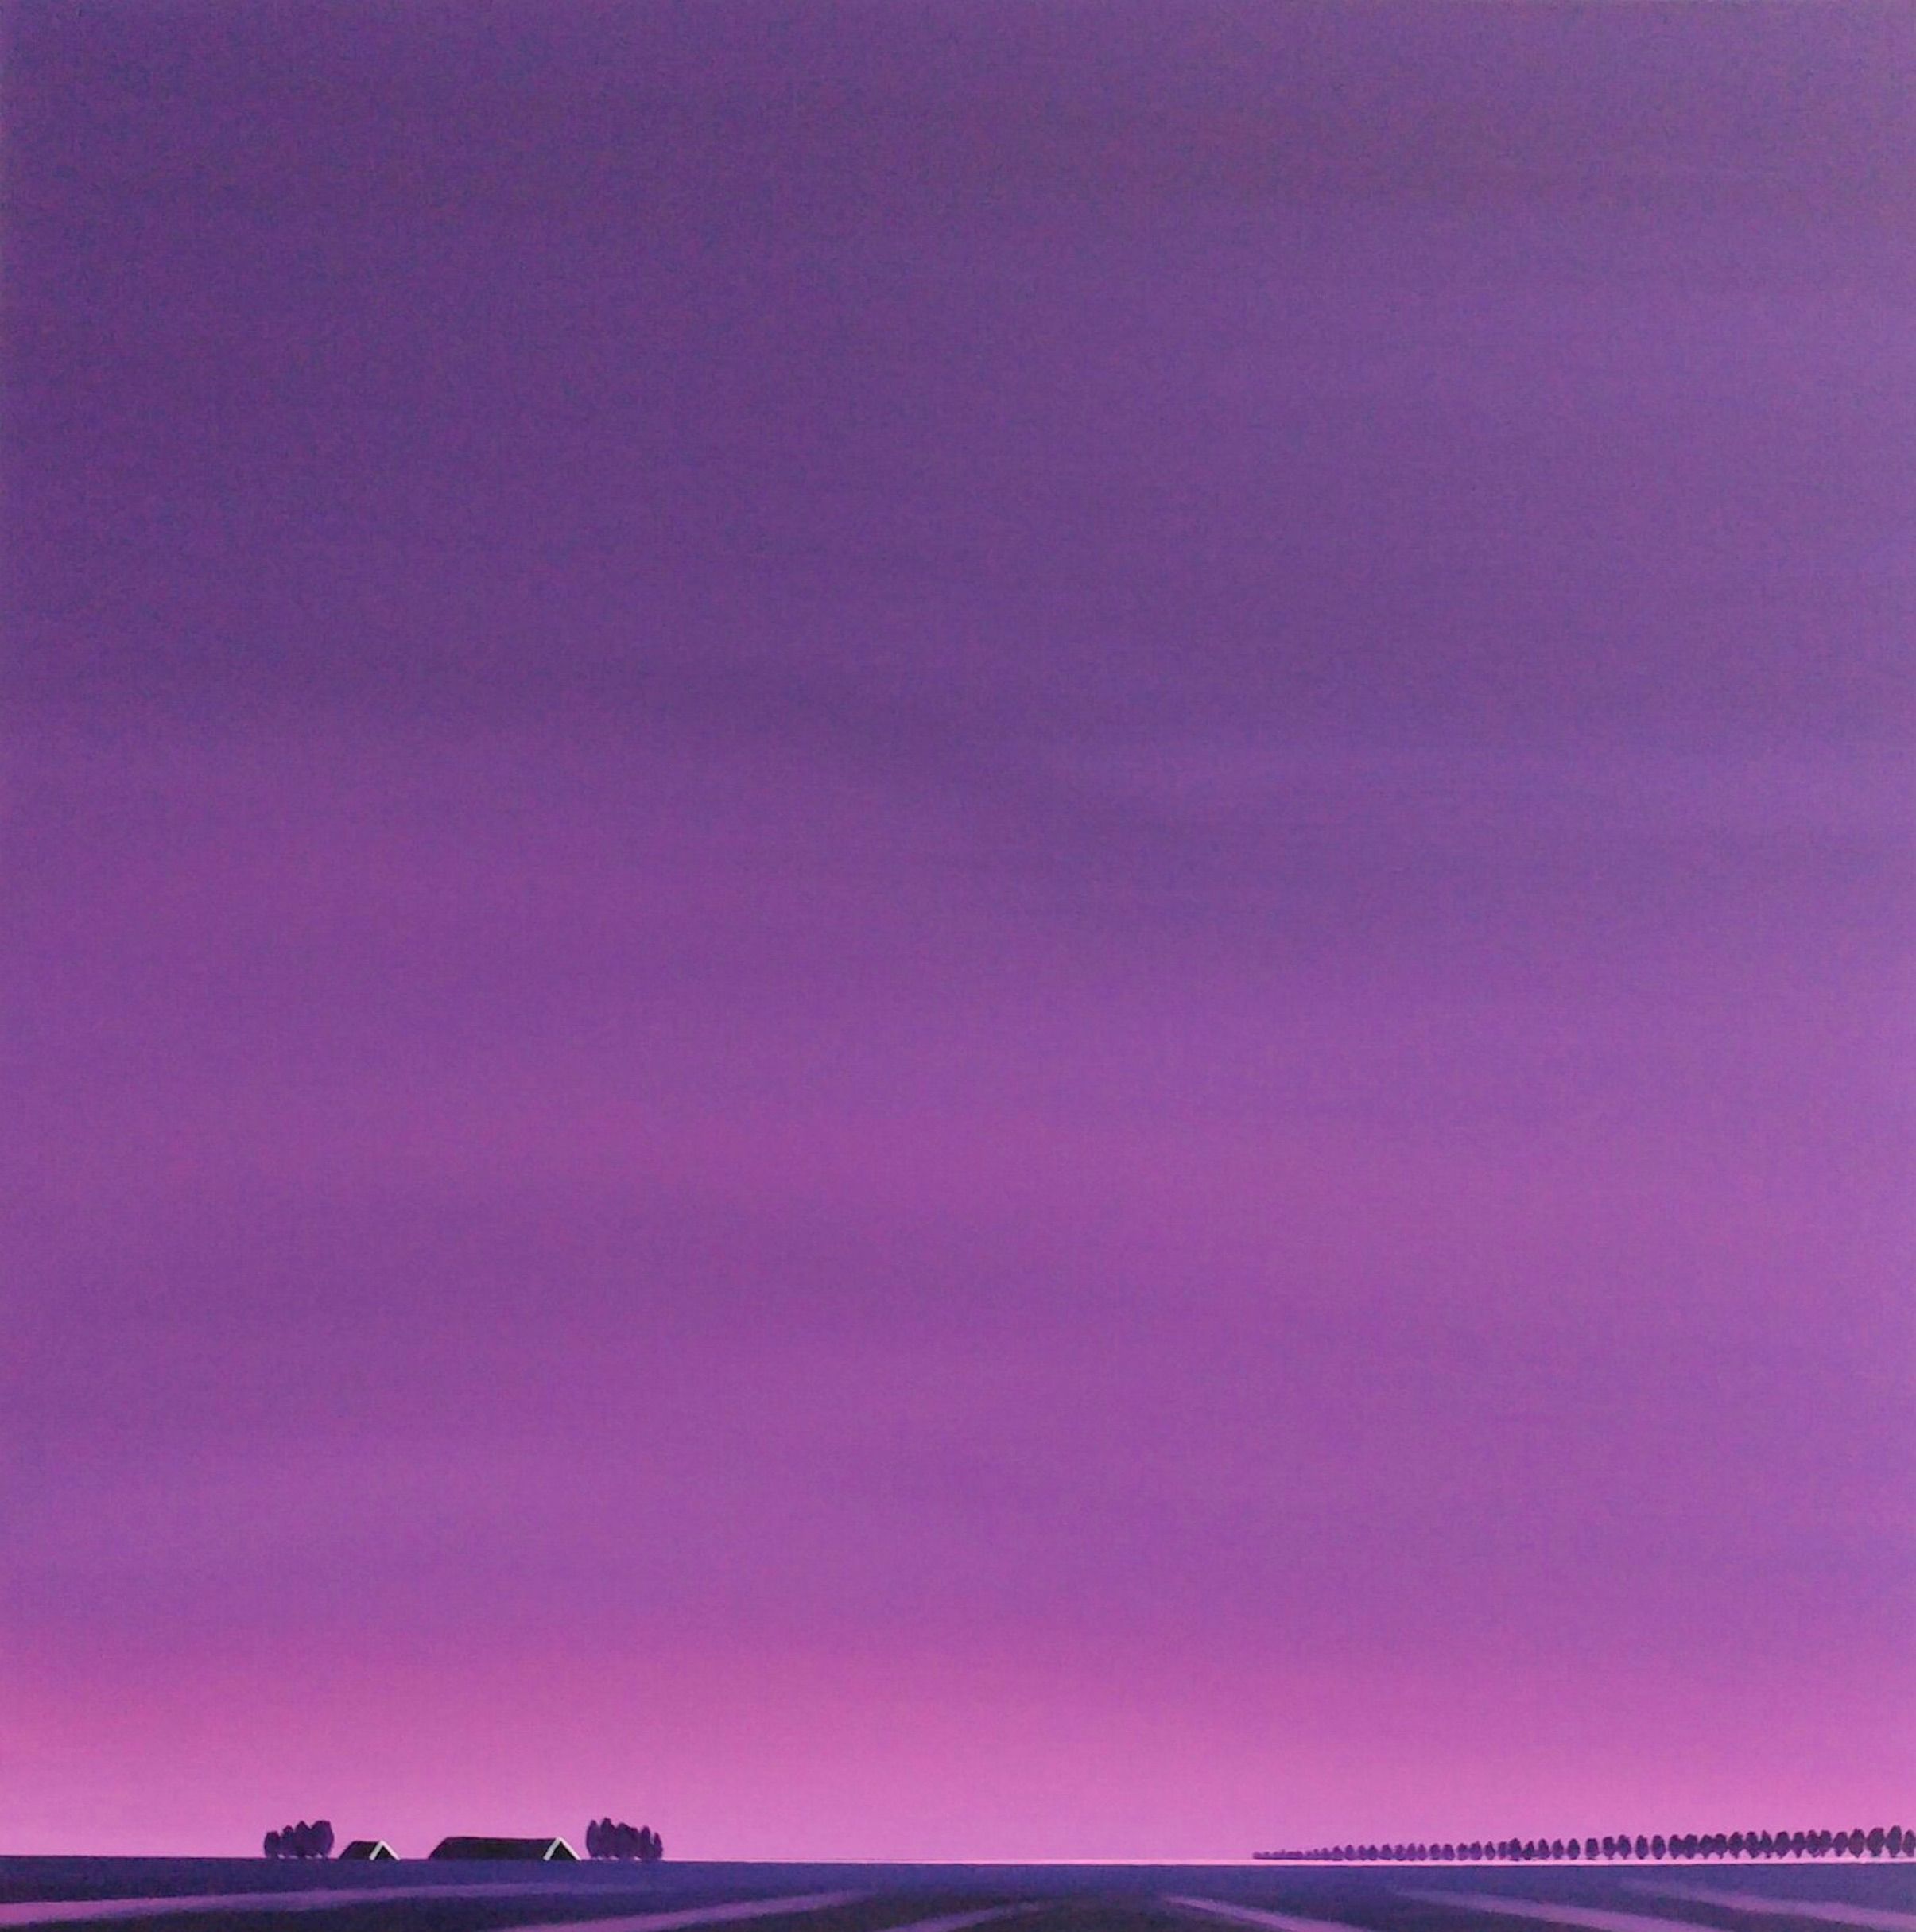 Le tableau "Dageraad, goodbye to the night" de Nelly van Nieuwenhuijzen montre un paysage en Zélande. Le ciel mauve, un lever de soleil rose mauve, qui se reflète dans les traces sur la terre et les toits sombres, est intense, presque accablant